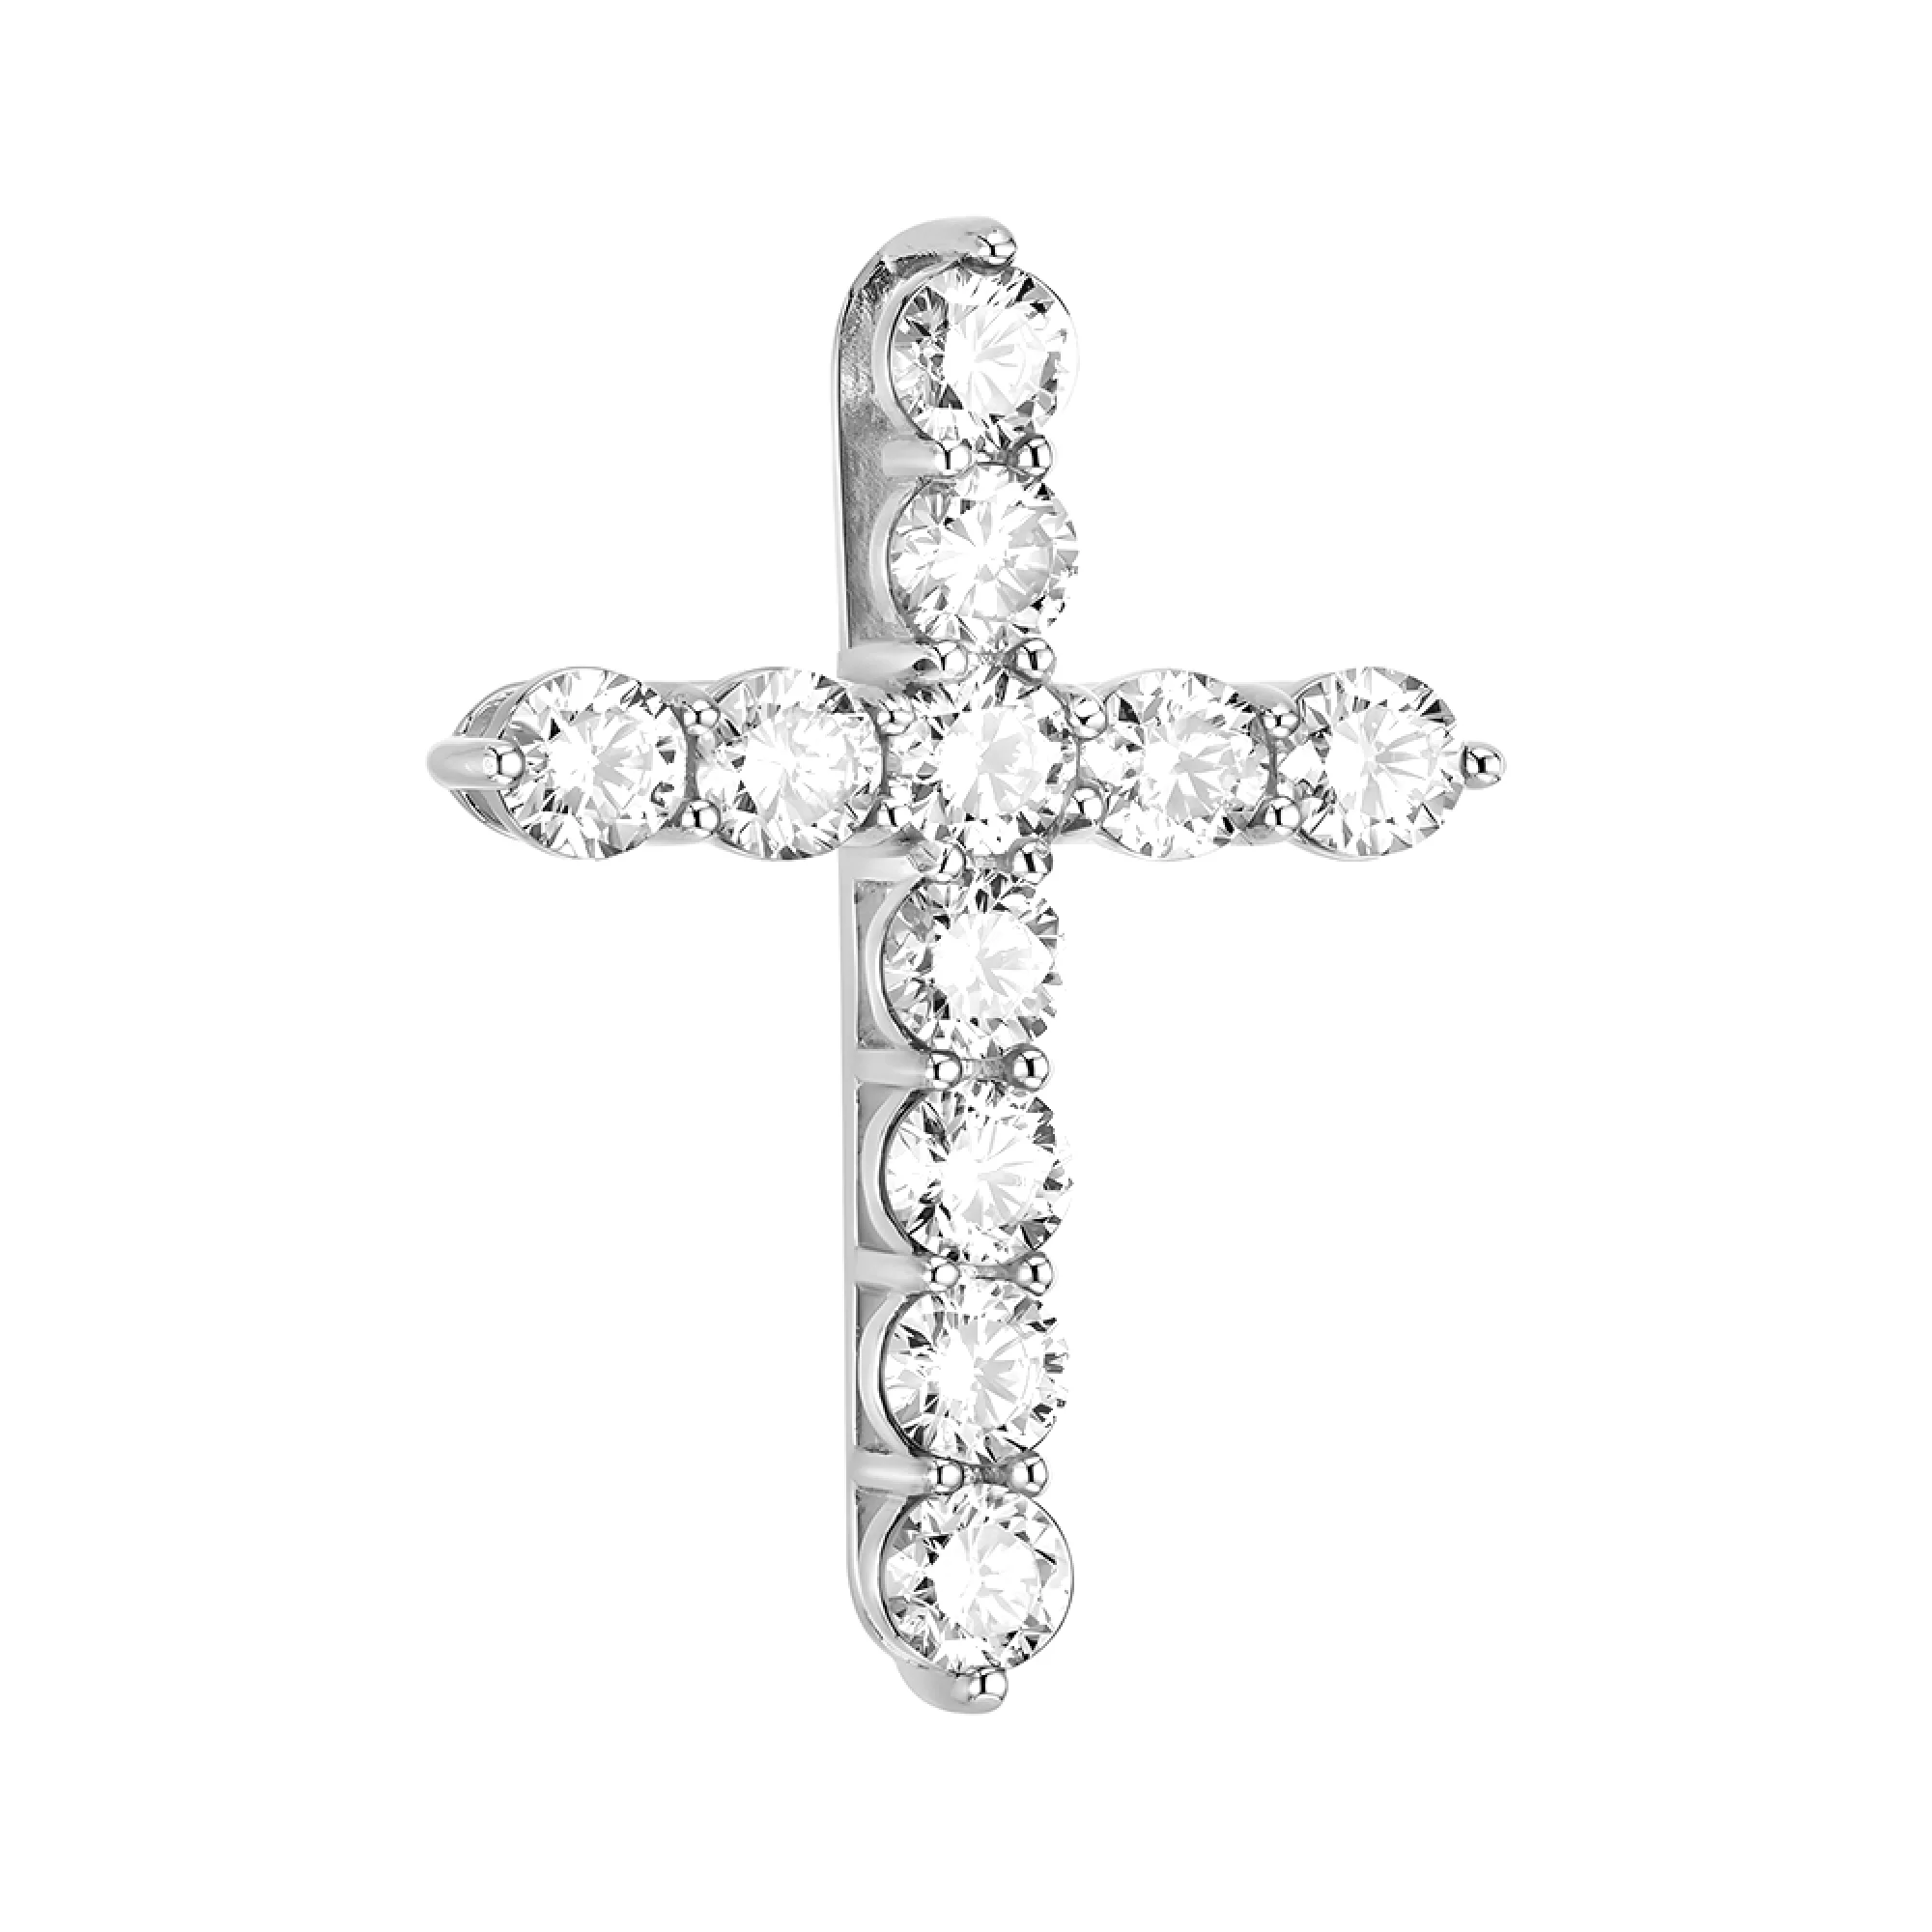 Крестик из белого золота с дорожкой бриллиантов - 1524125 – изображение 1